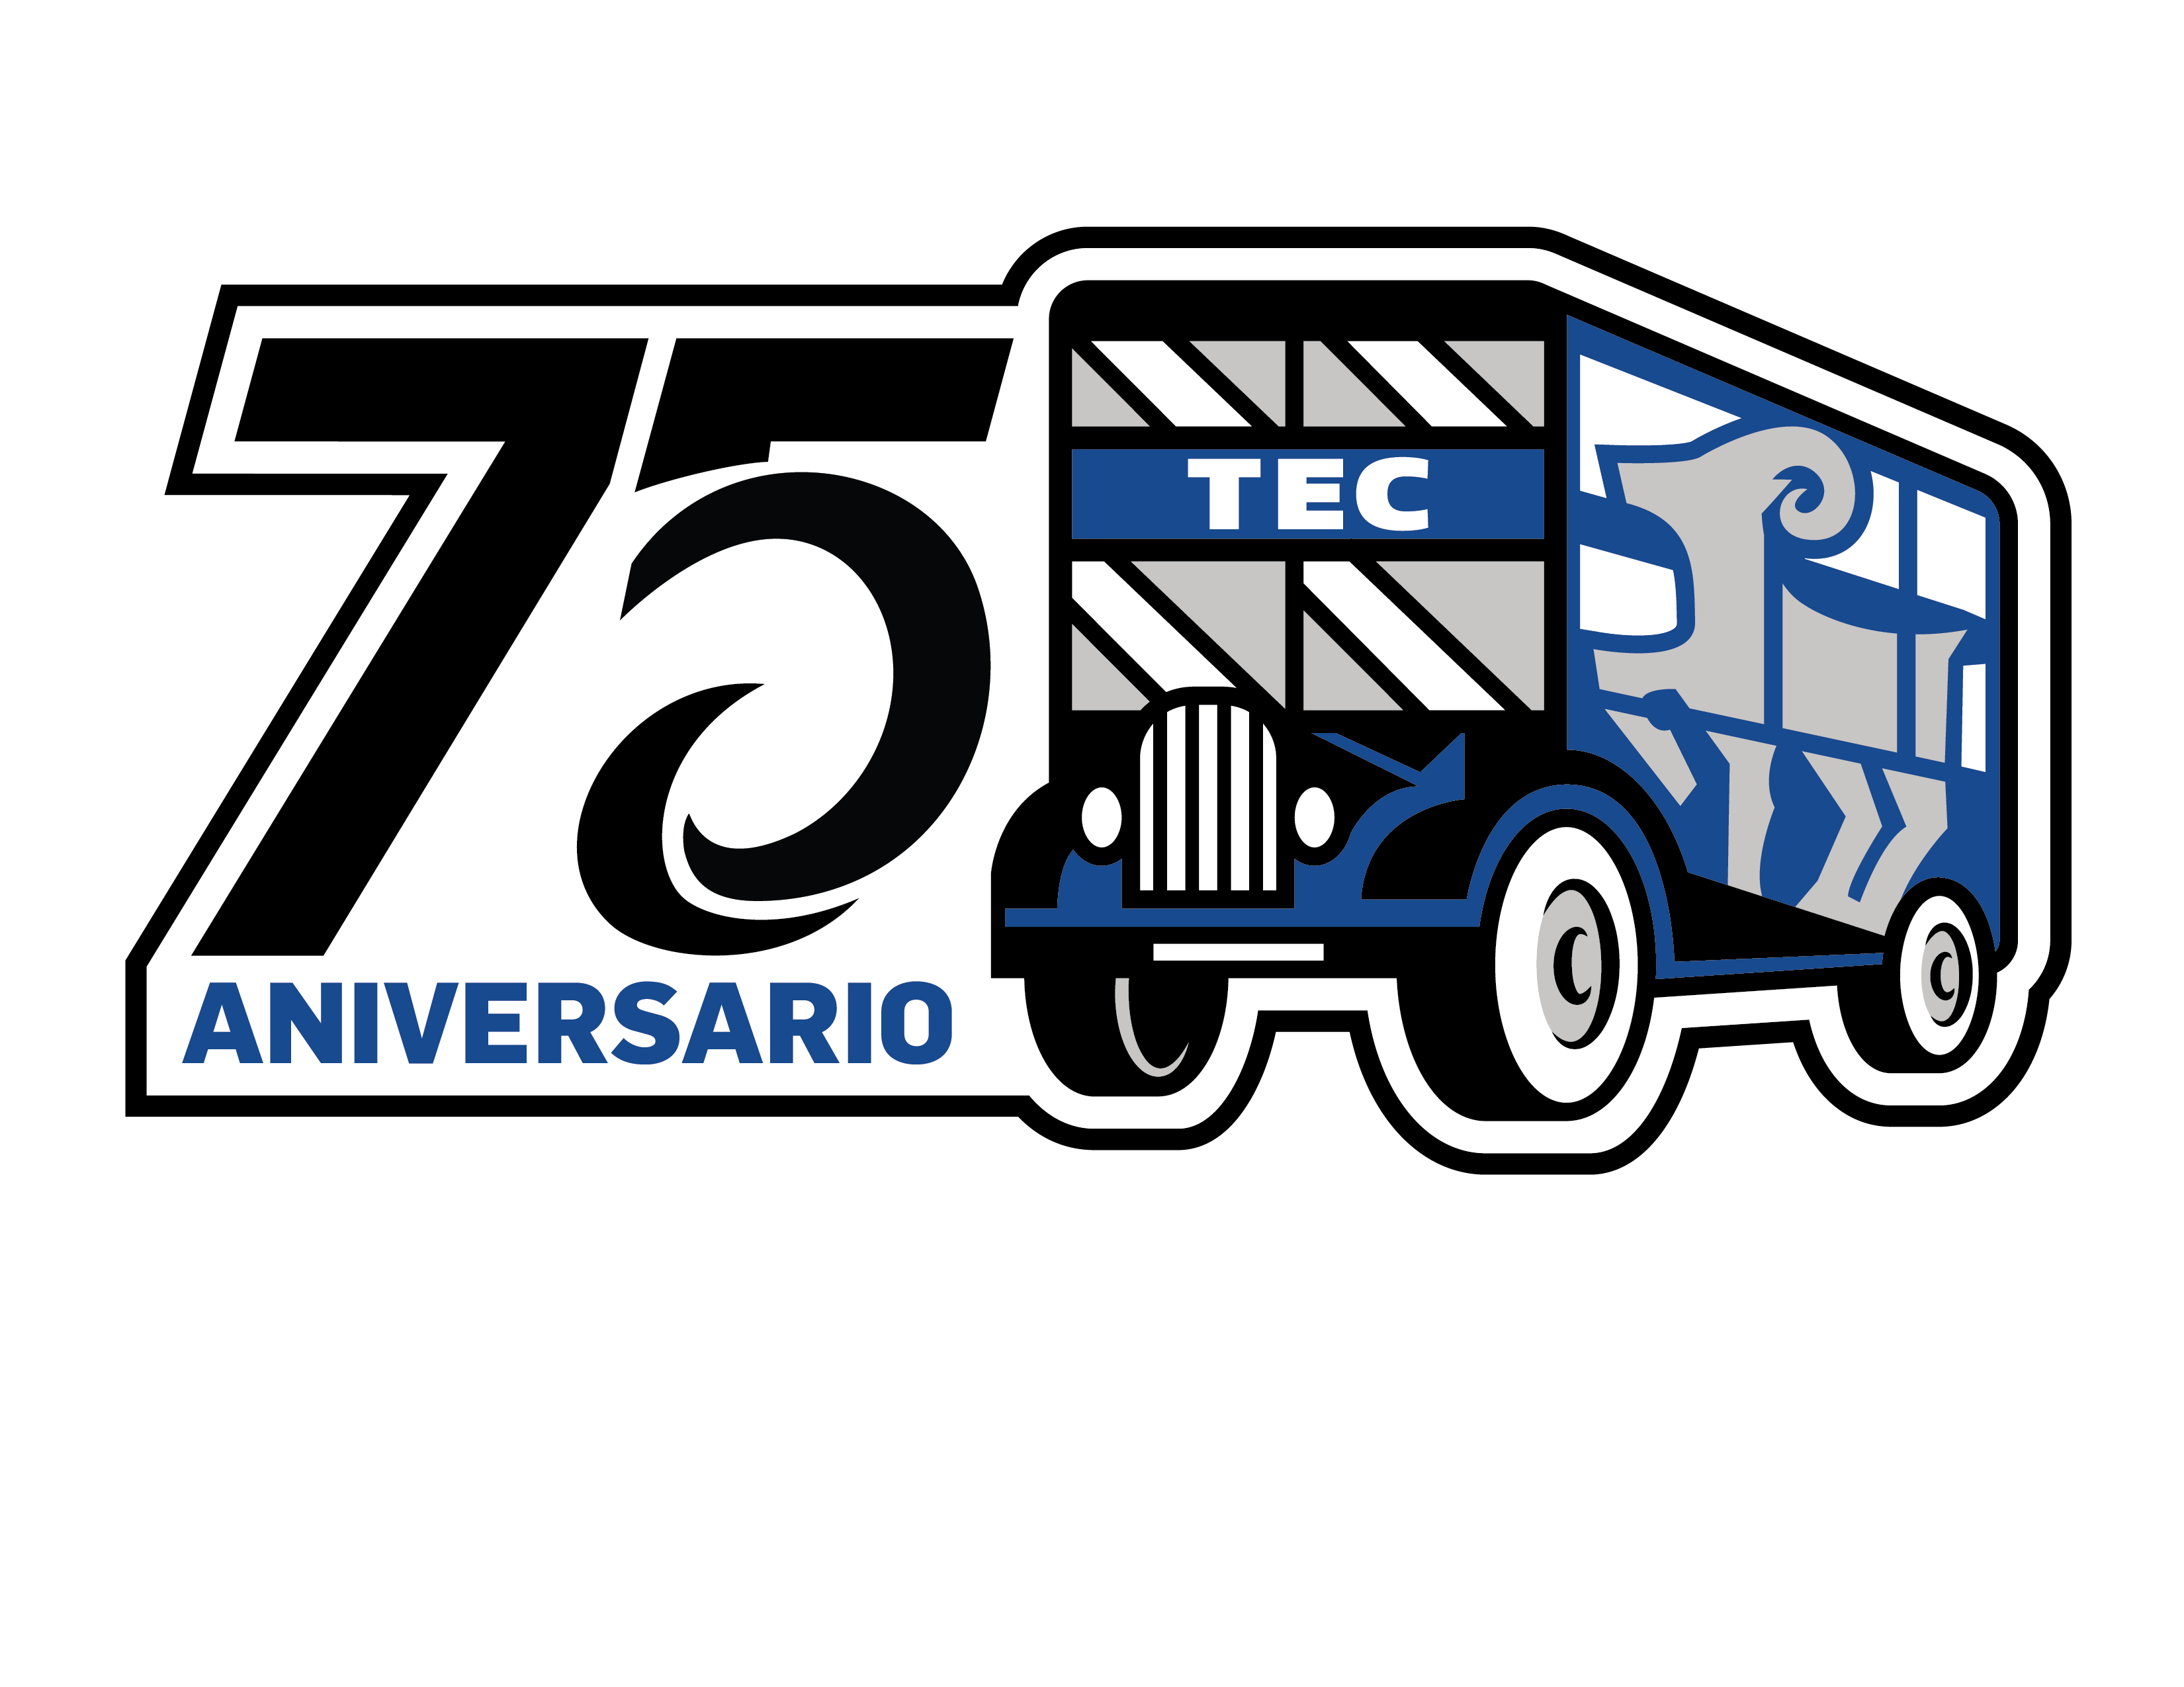 EL logo del 75 aniversario hace alusión a la leyenda de la adopción del Borrego como mascota, rumbo al primer partido de futbol americano entre el Tec y el equipo de la Universidad Autónoma de Nuevo León